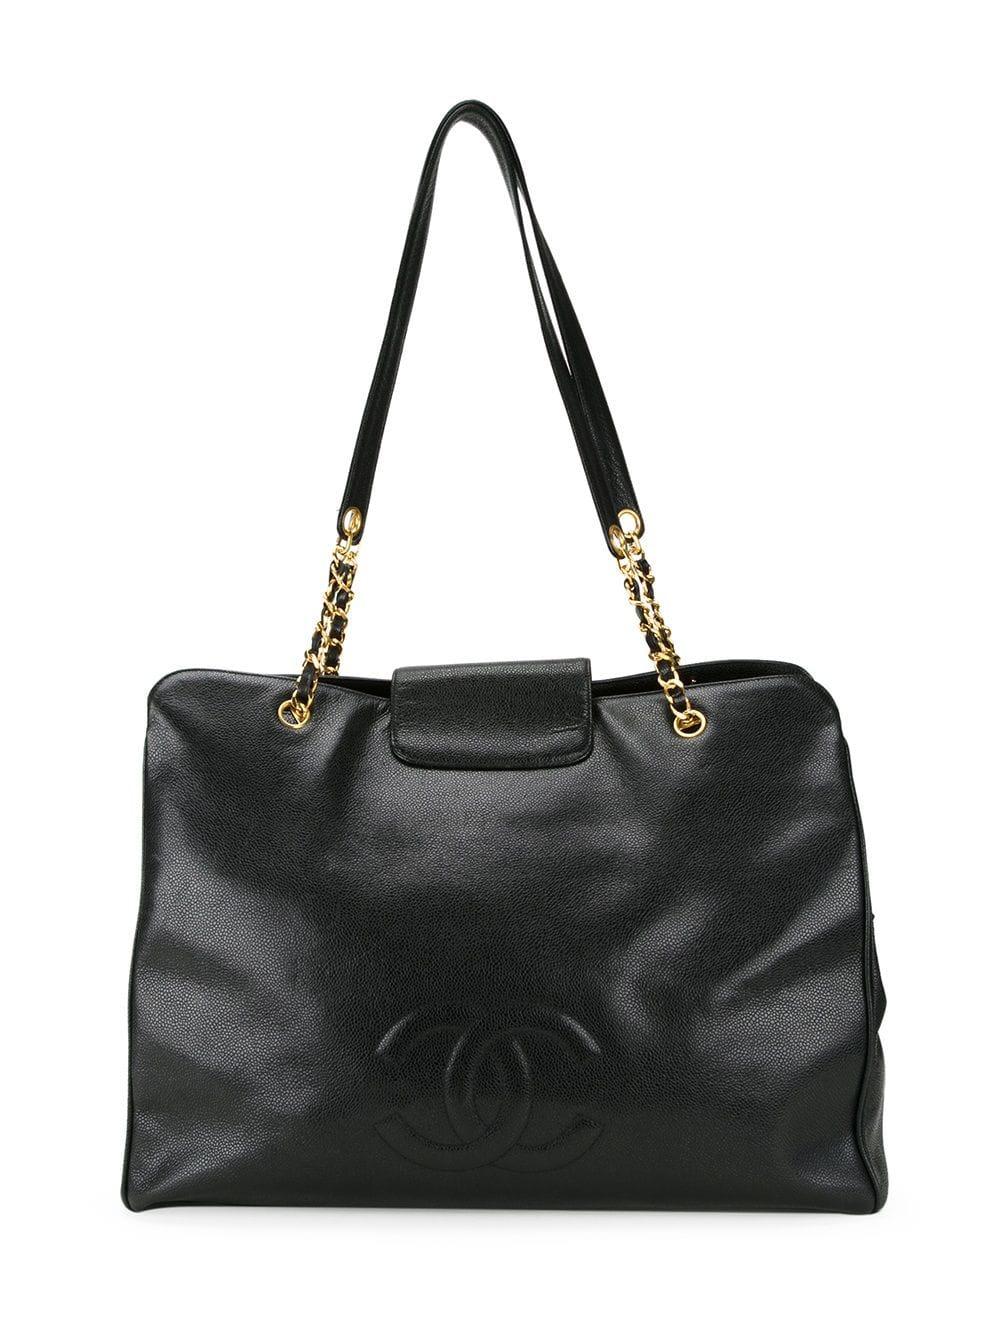 Chanel Black Caviar Supermodel Overnight Weekender Travel Tote Shoulder Bag 1